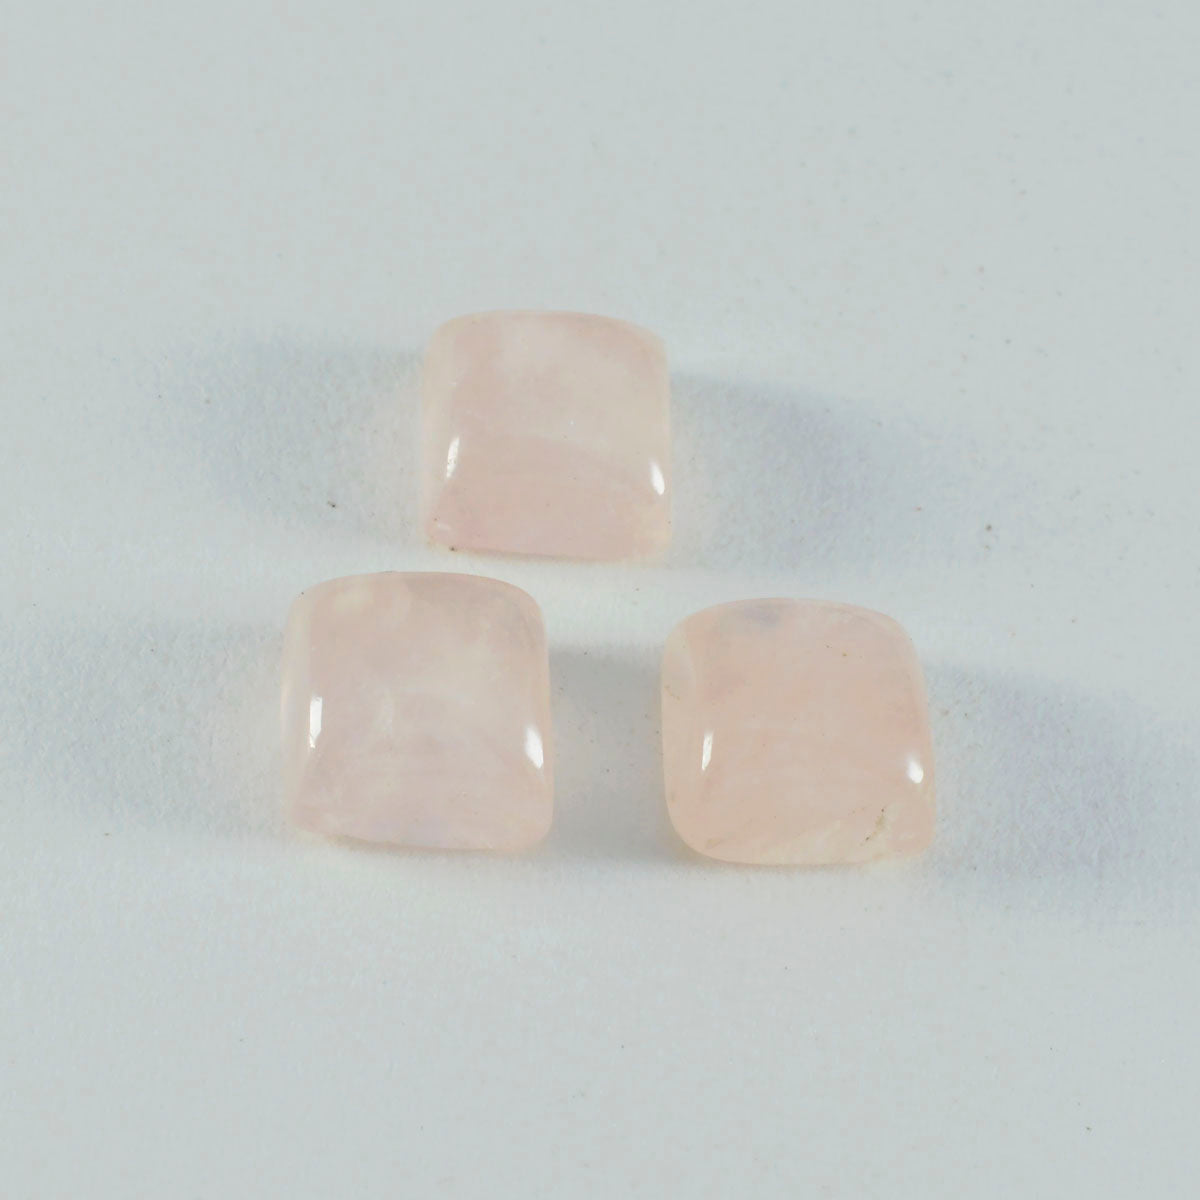 riyogems 1 шт. кабошон из розового кварца 13x13 мм квадратной формы, драгоценный камень превосходного качества